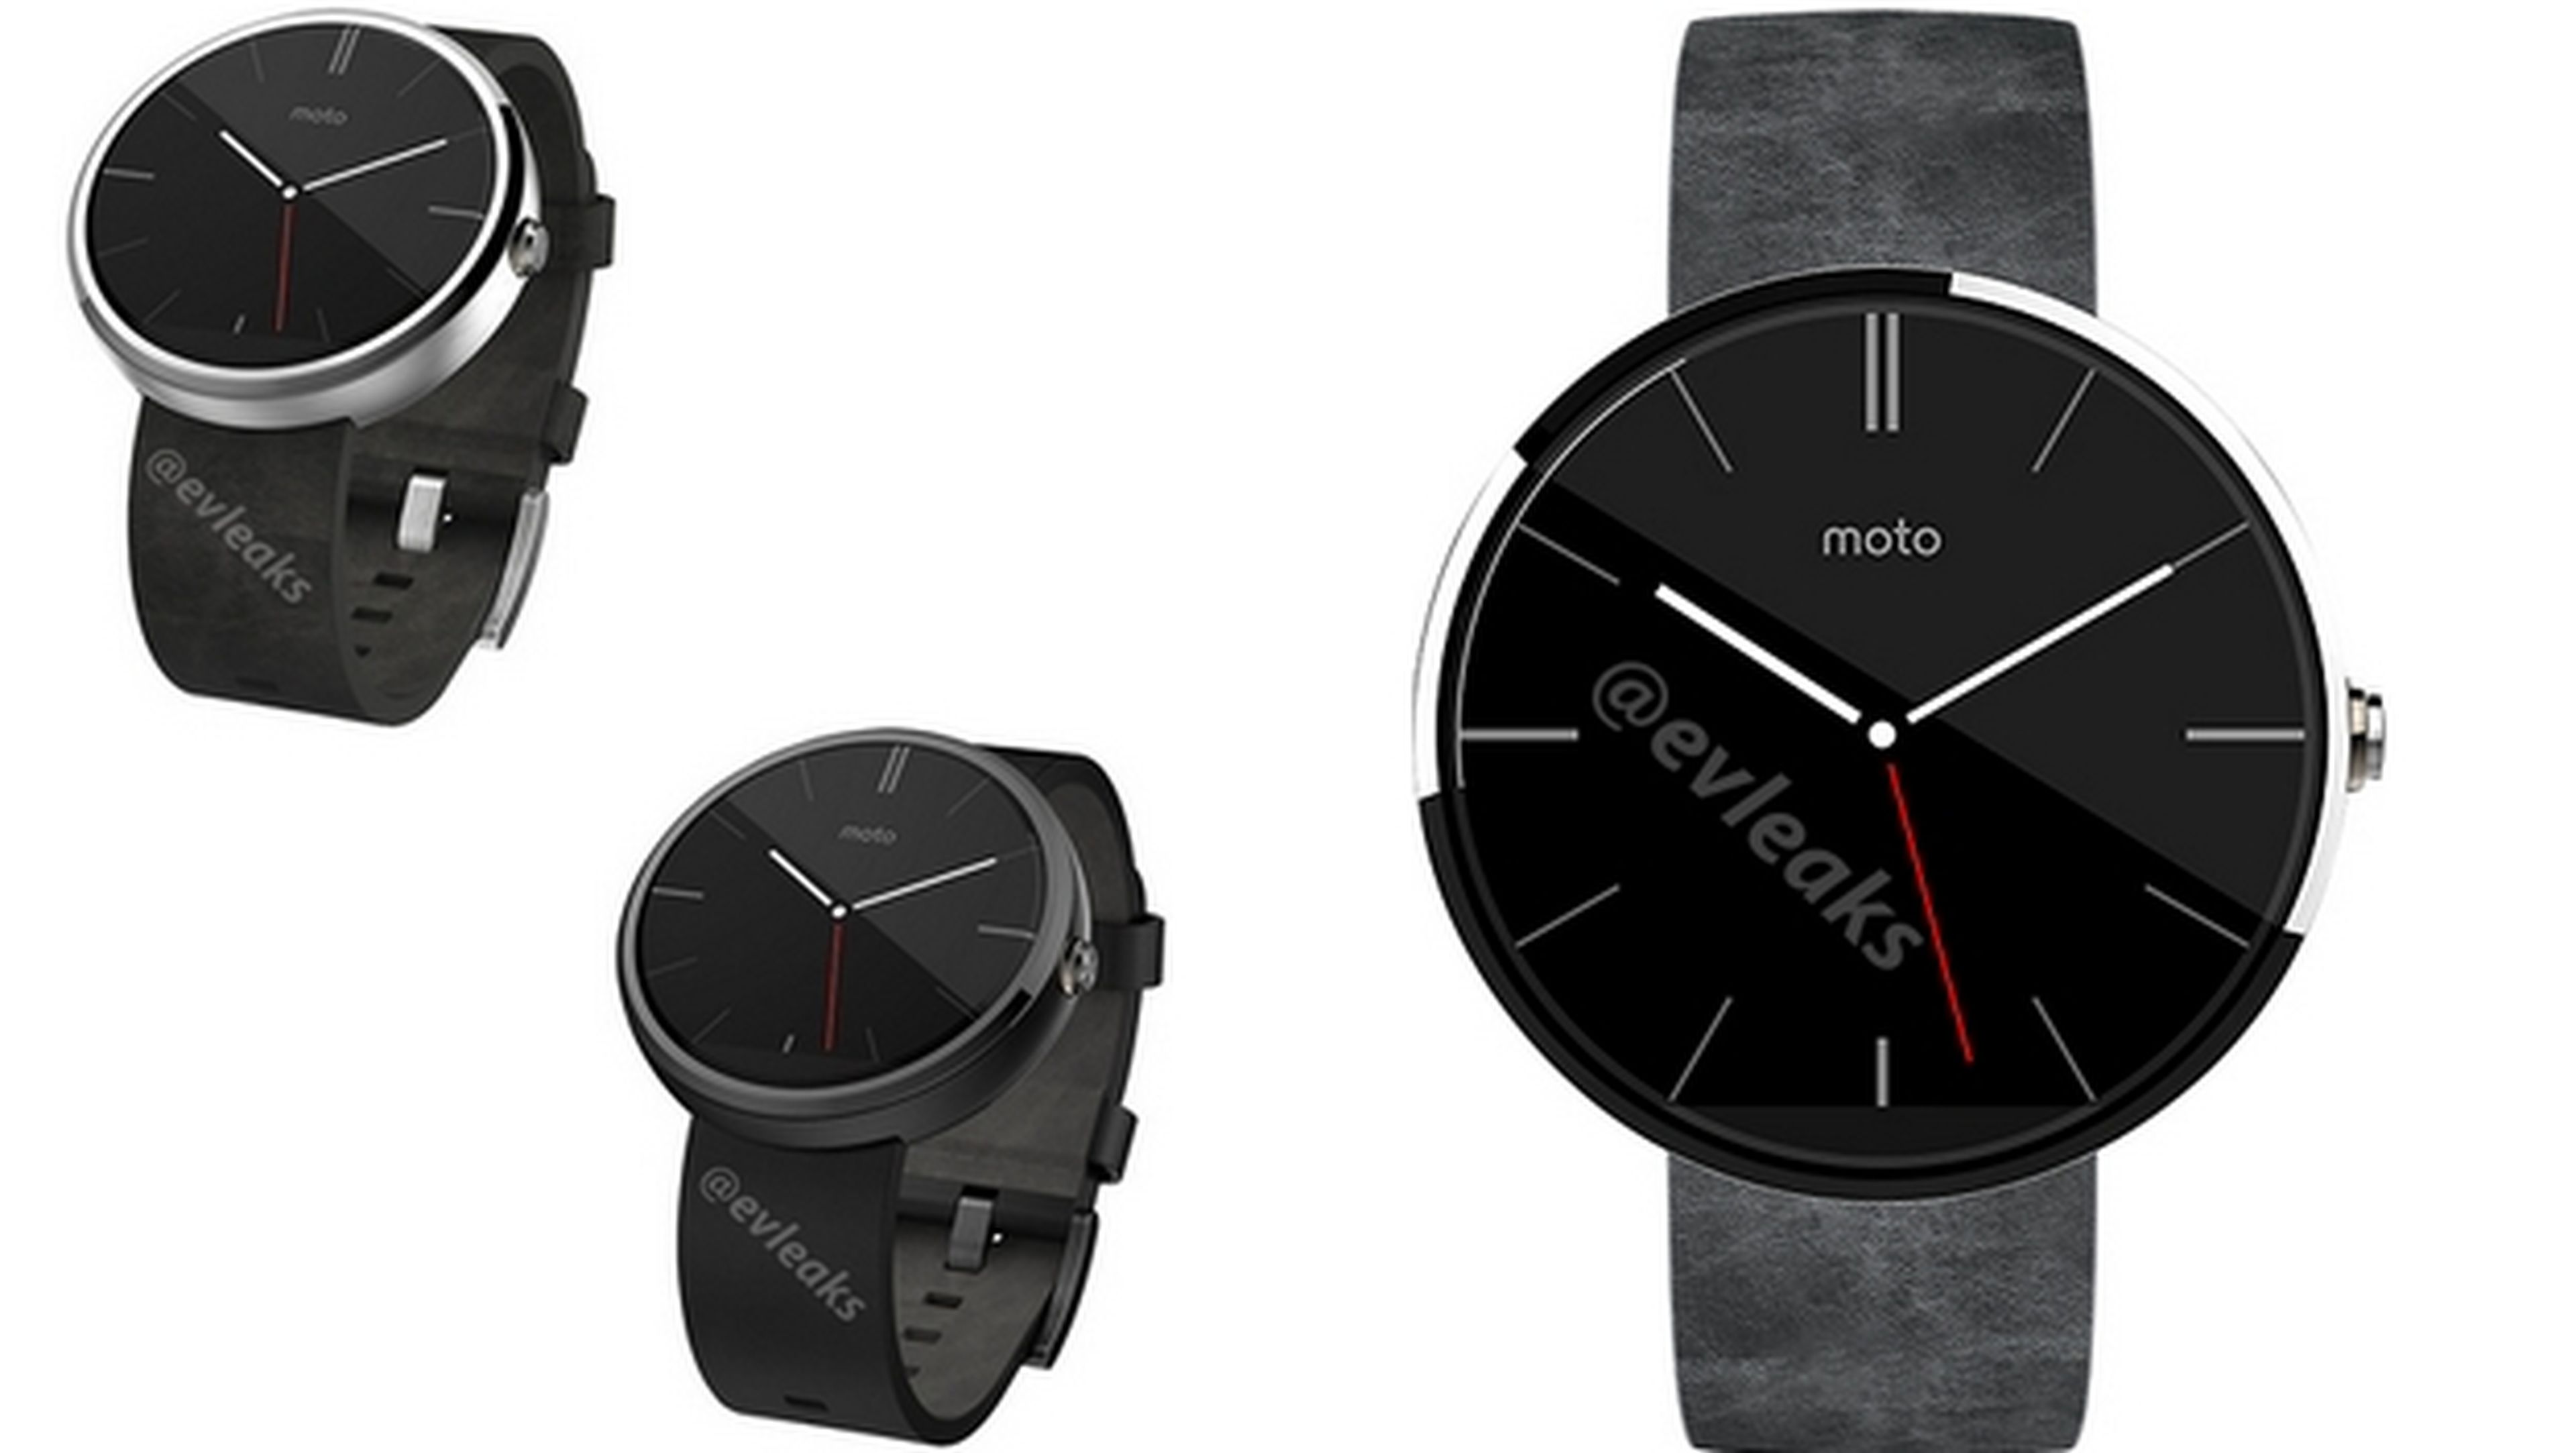 Se desvelan nuevas fotos del smartwatch Moto 360, el reloj inteligente de Motorola.